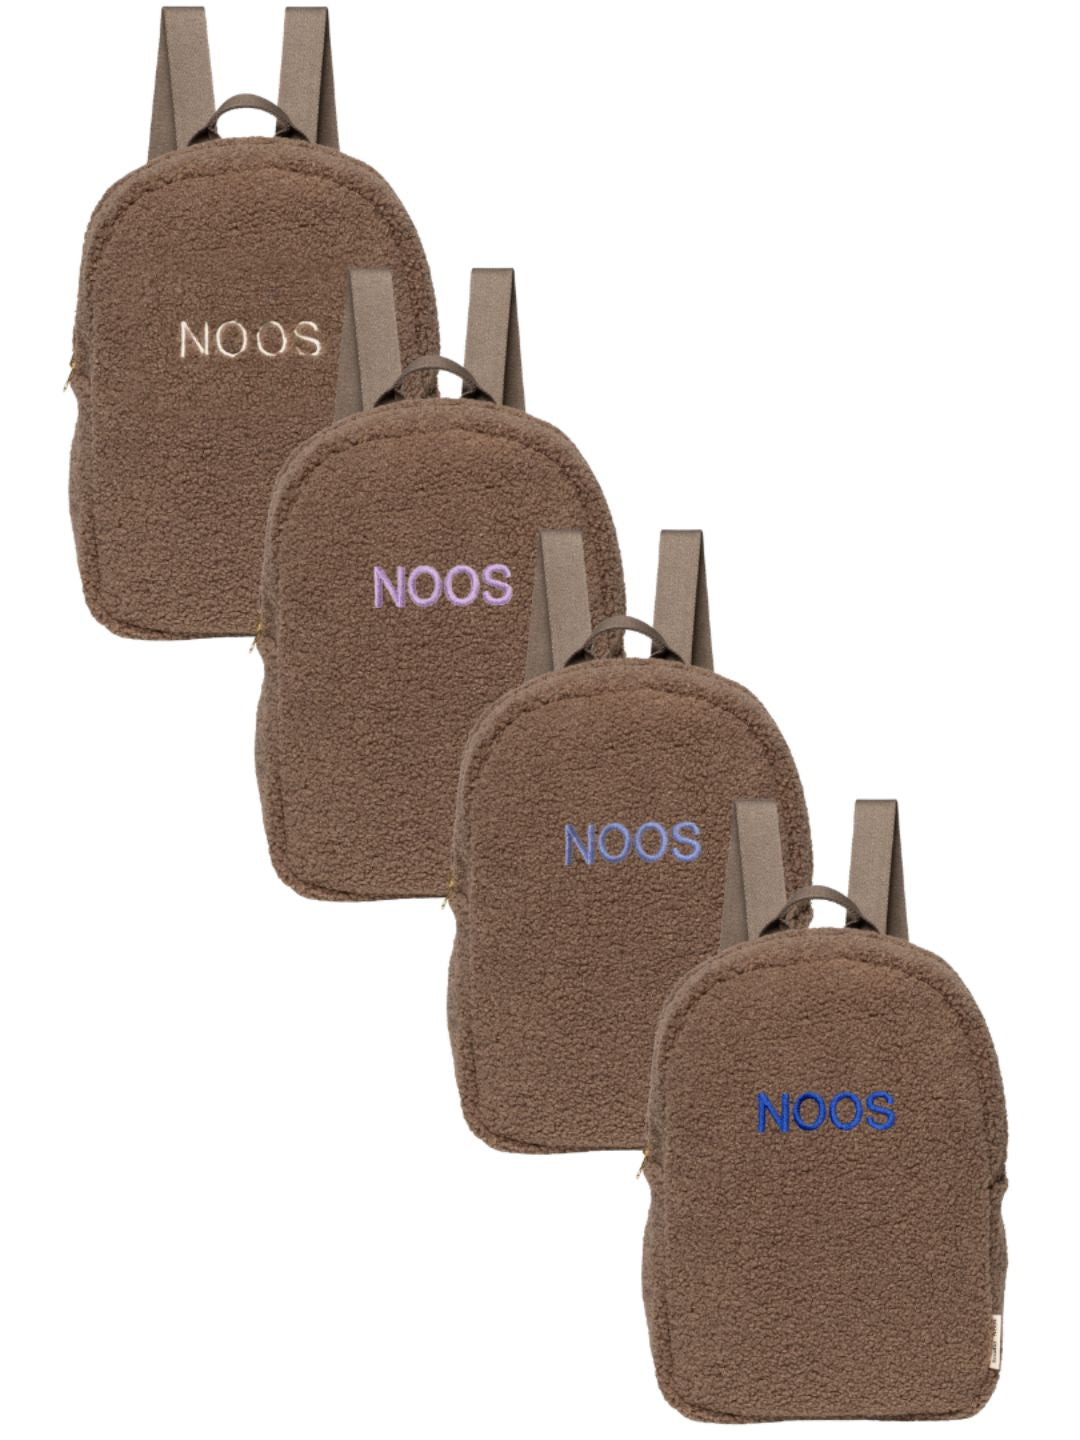 Studio Noos Personalized MIDI Backpack - Brown, Studio Noos nimeline midi-seljakott – pruun, personaliseeritud seljakott